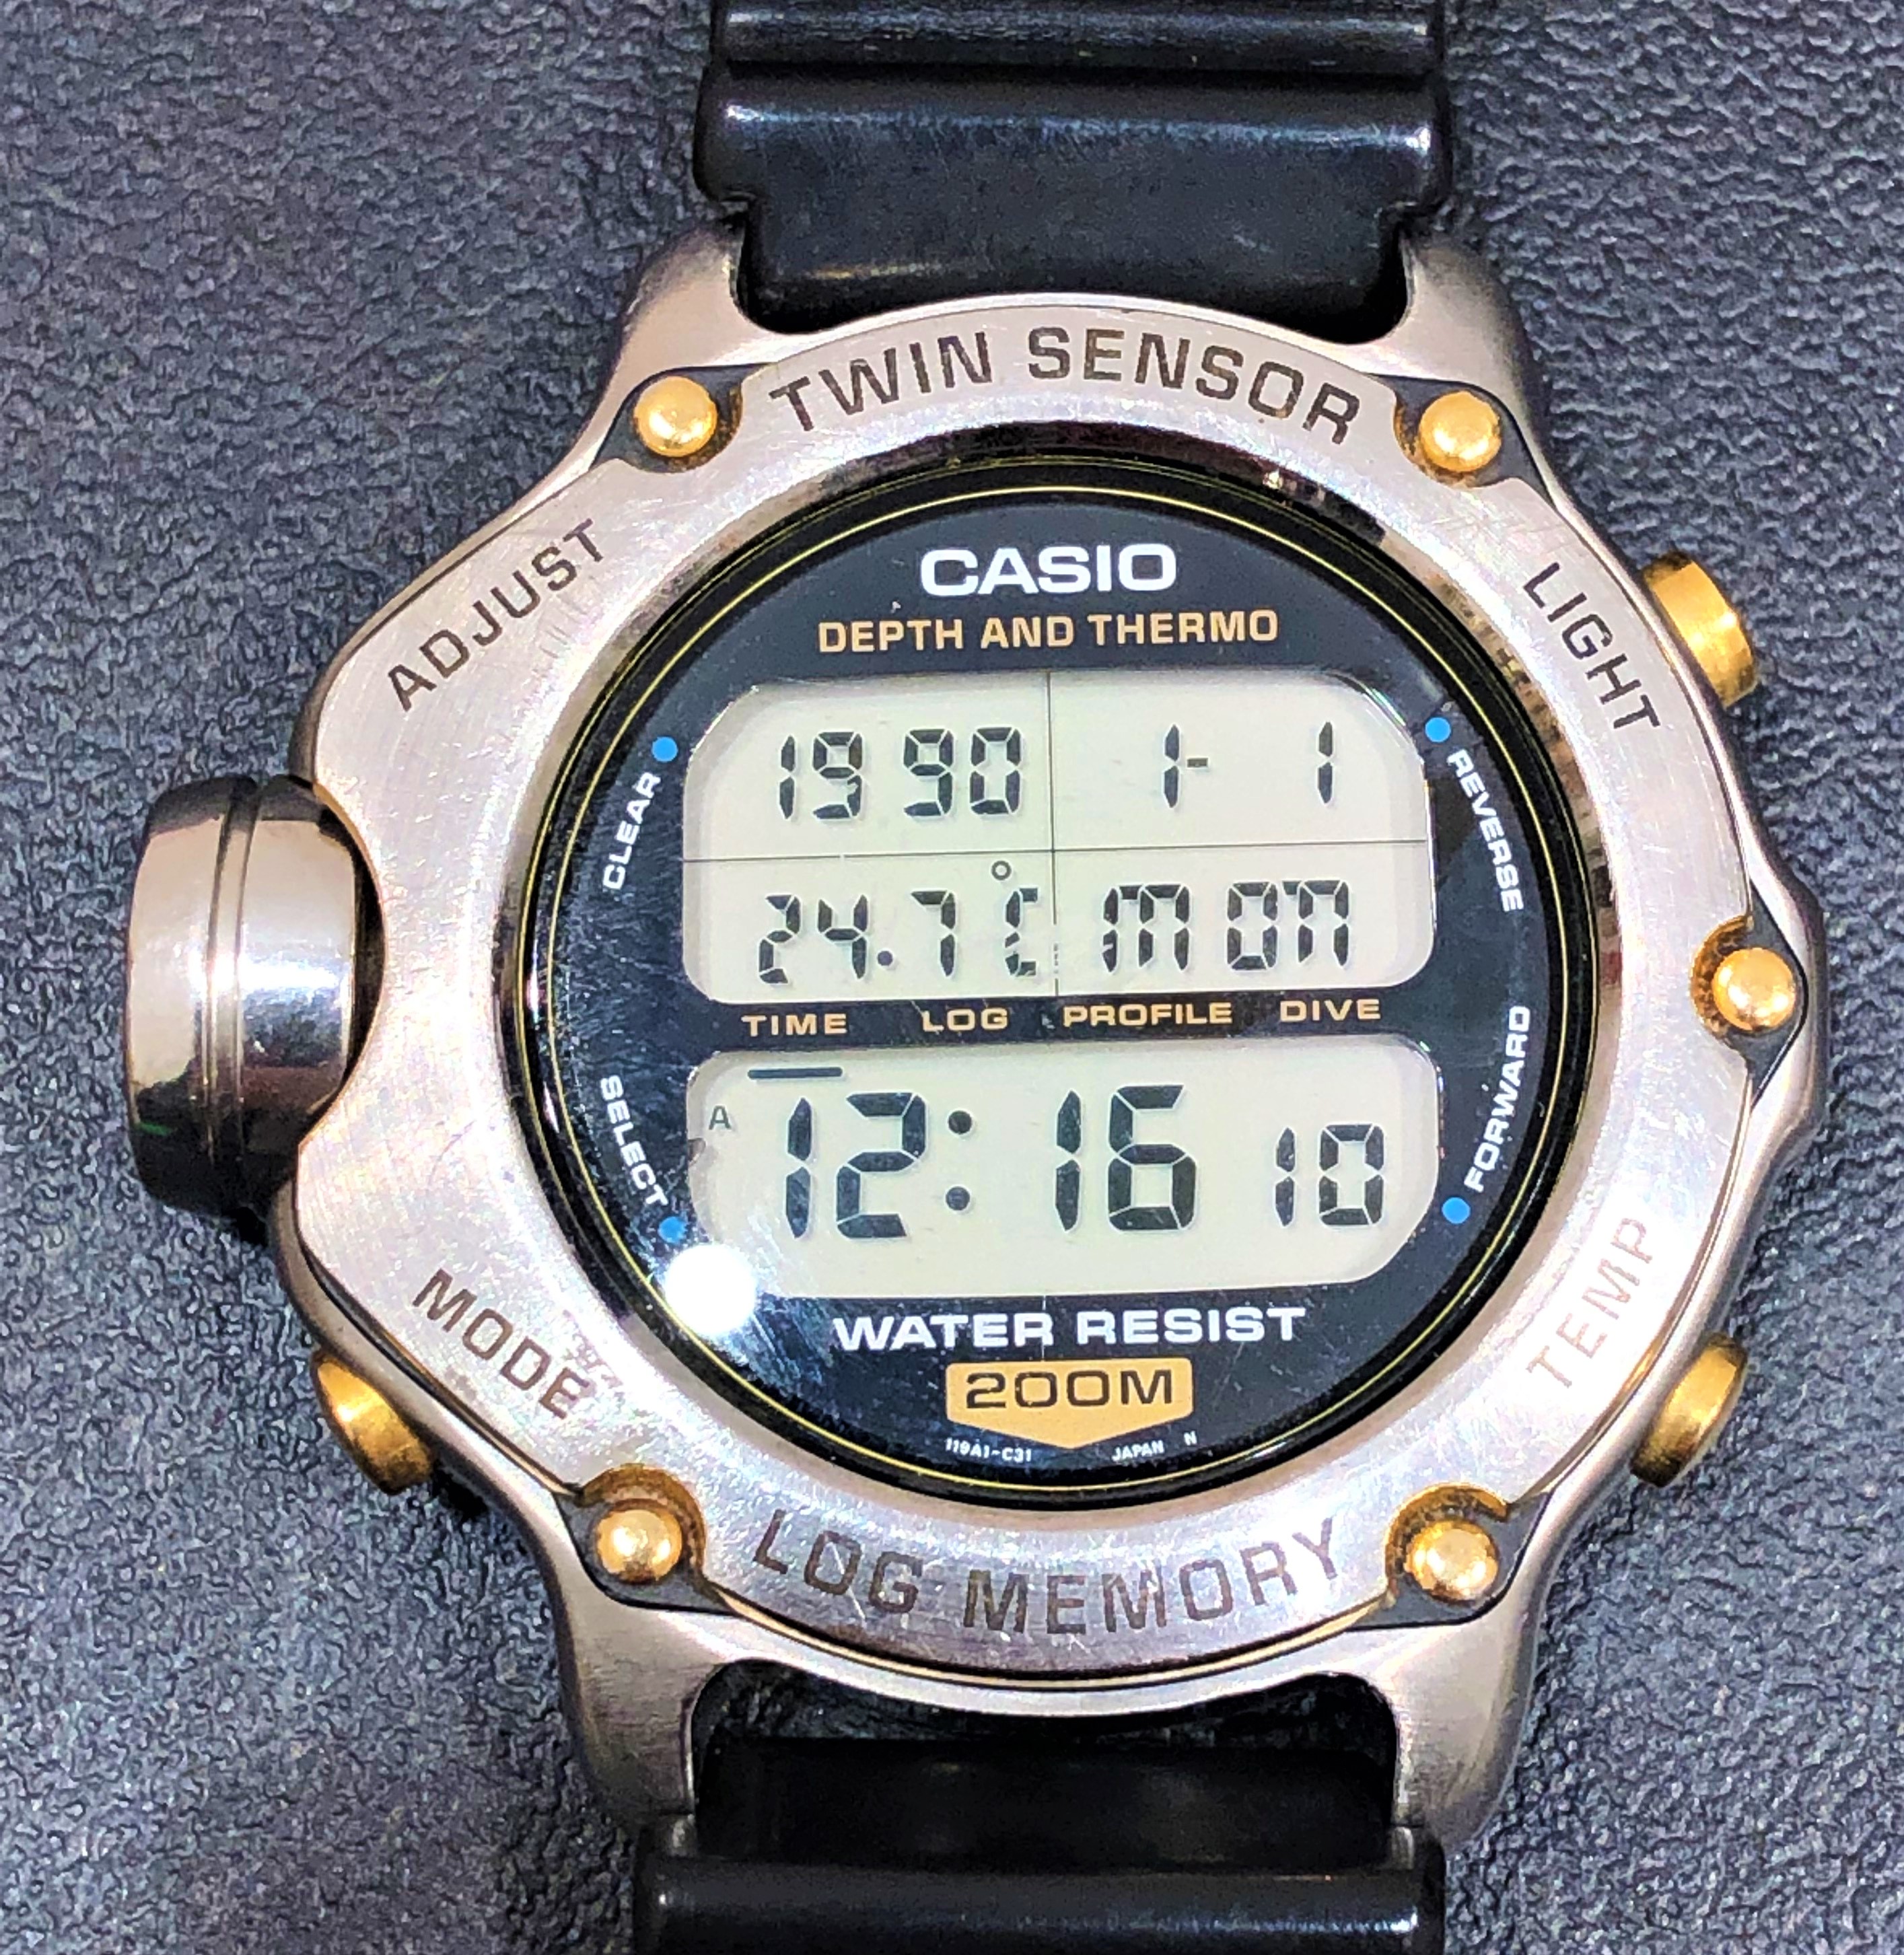 CASIO/カシオ】DEP-600 ツインセンサーロッグメモリー 腕時計 | わかば